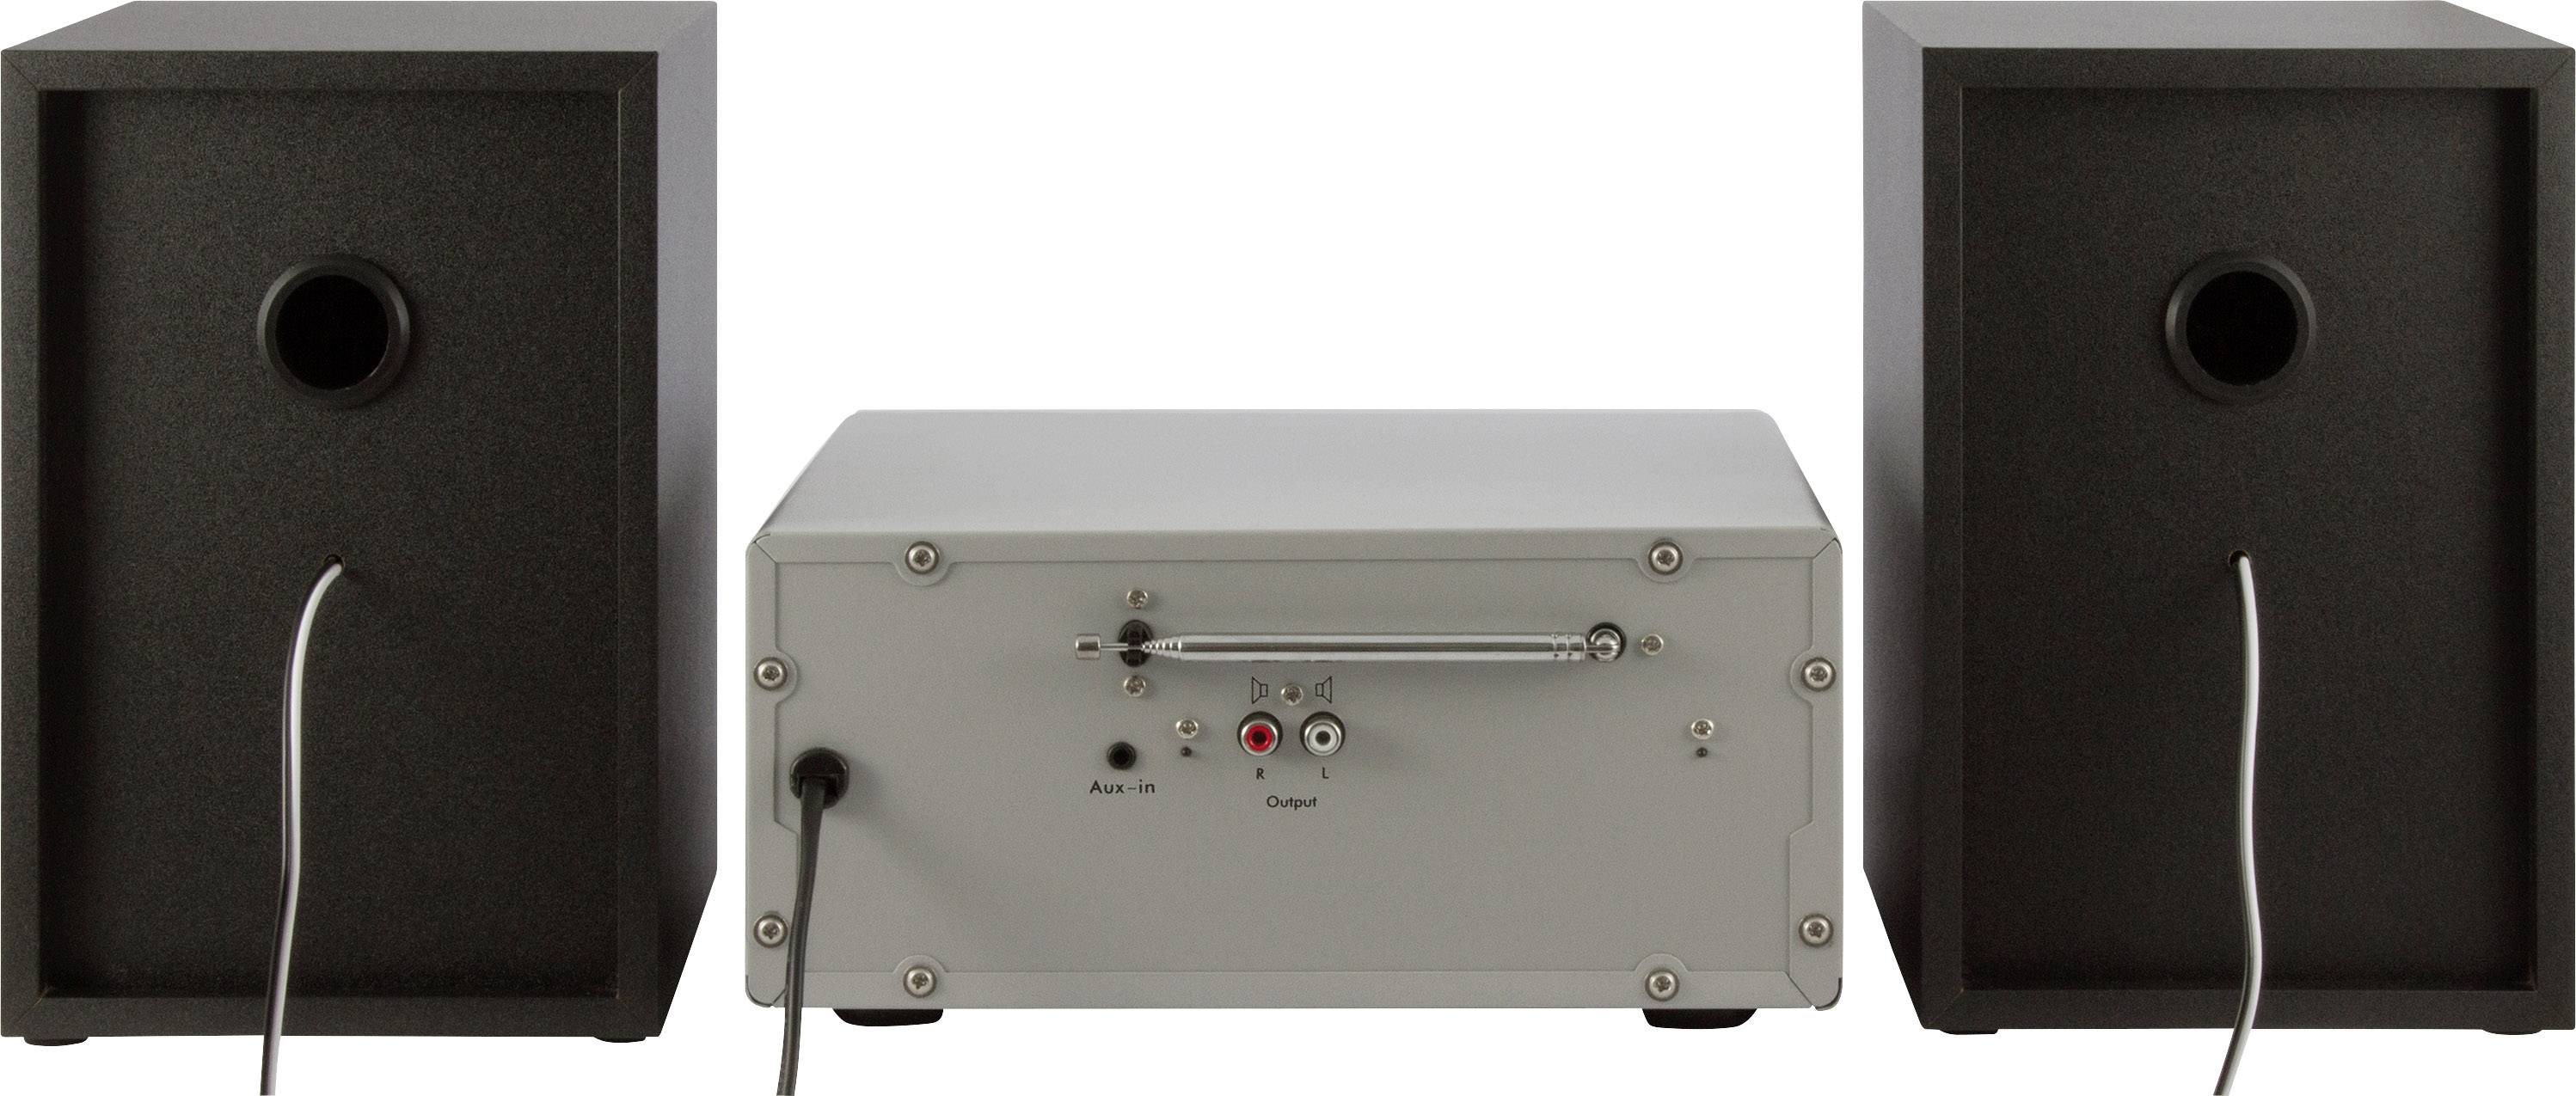 Imperial DABMAN i30 Stereo Portátil Analógico y Digital Portátil, Analógico y Digital, Dab+,FM, 87,5-108 MHz, 174-240 MHz, 10 W Radio